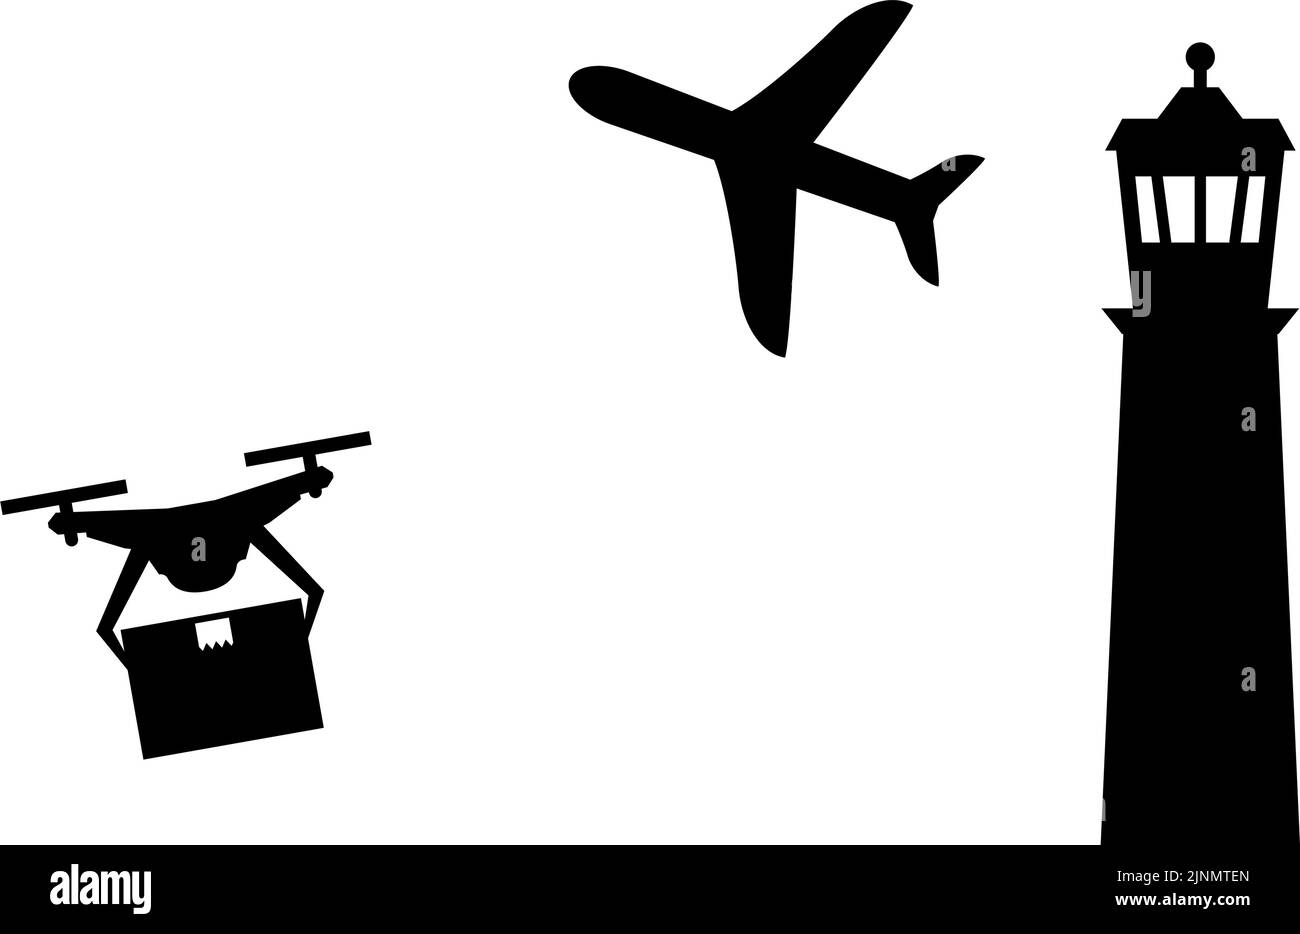 Icone semplici che mostrano le normative sui droni, che volano nello spazio aereo intorno agli aeroporti, ecc. Illustrazione Vettoriale